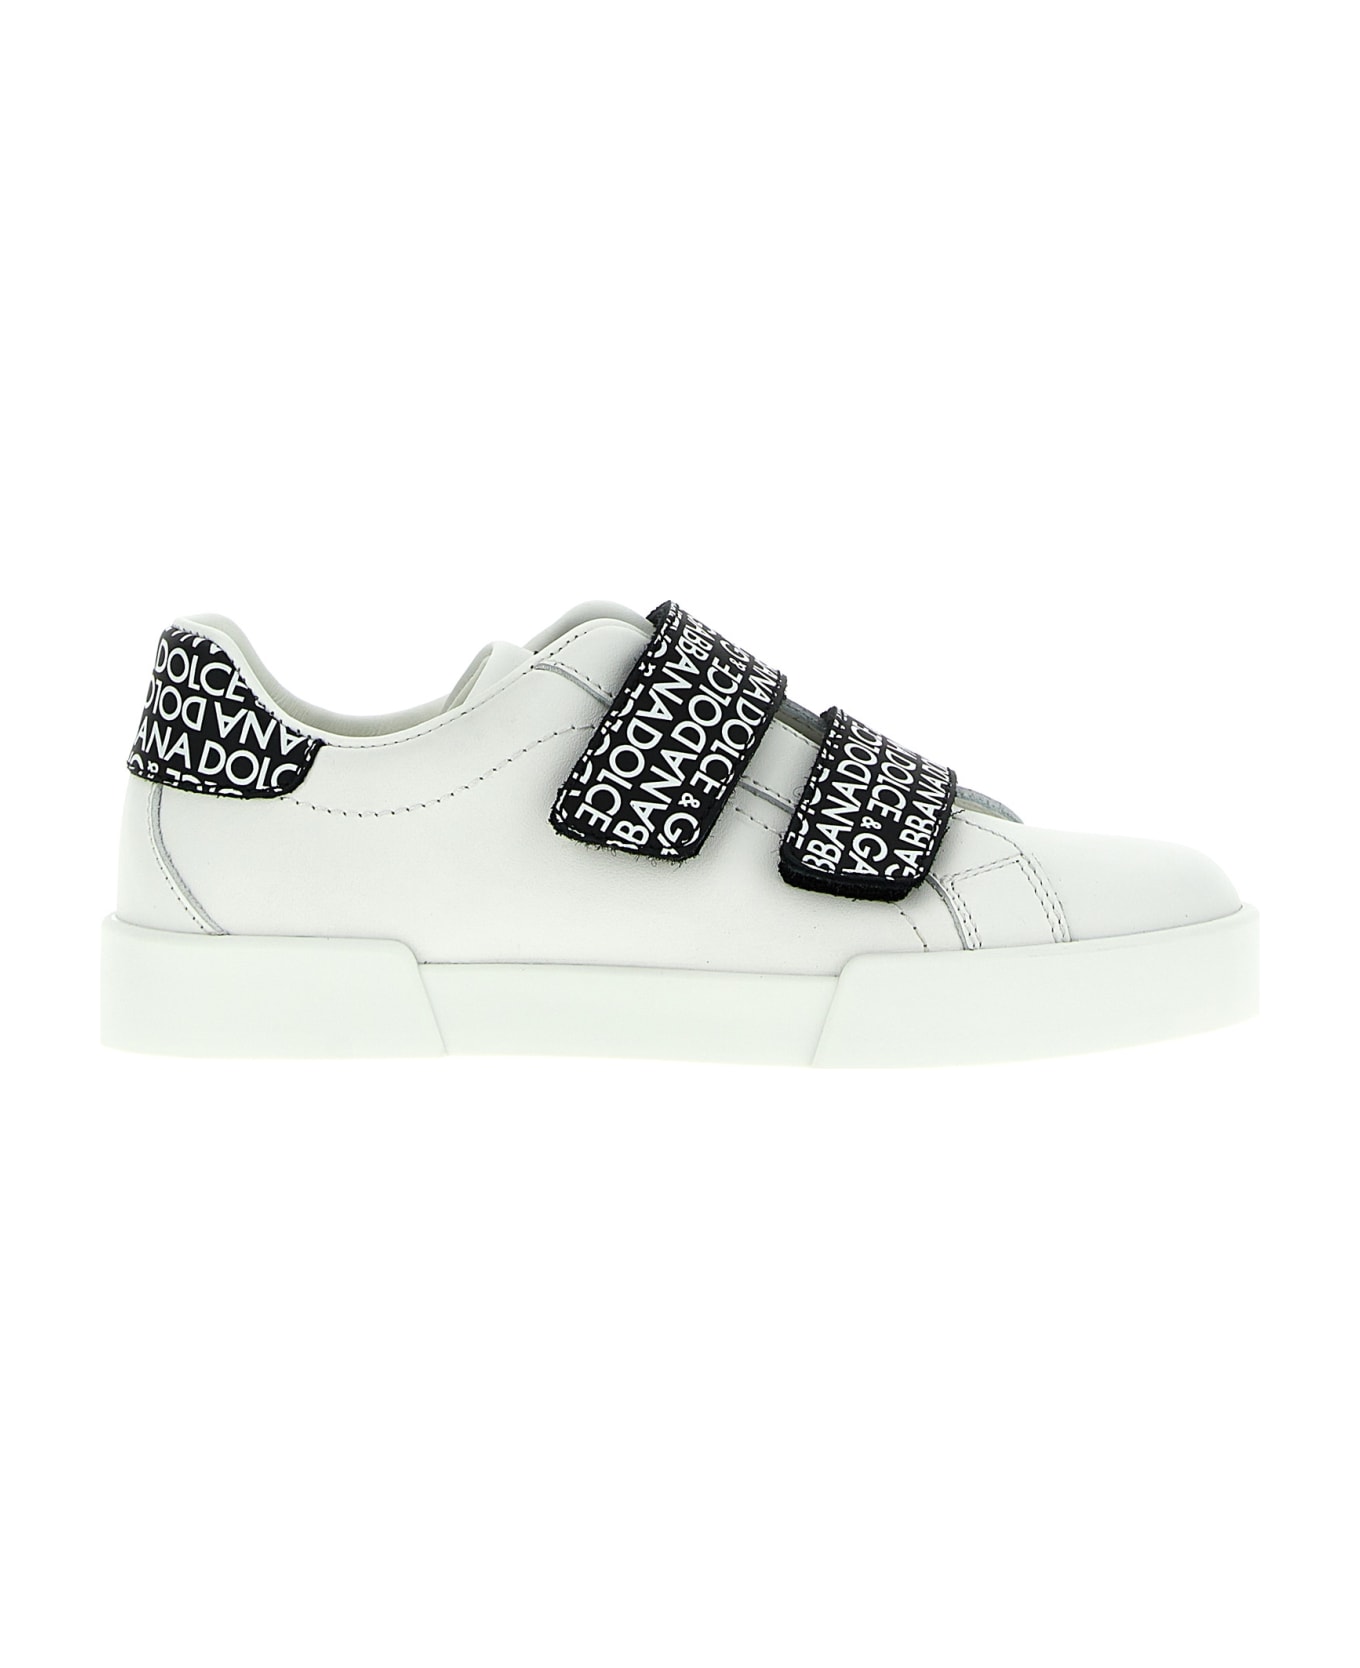 Dolce & Gabbana 'portofino' Sneakers - White/Black シューズ